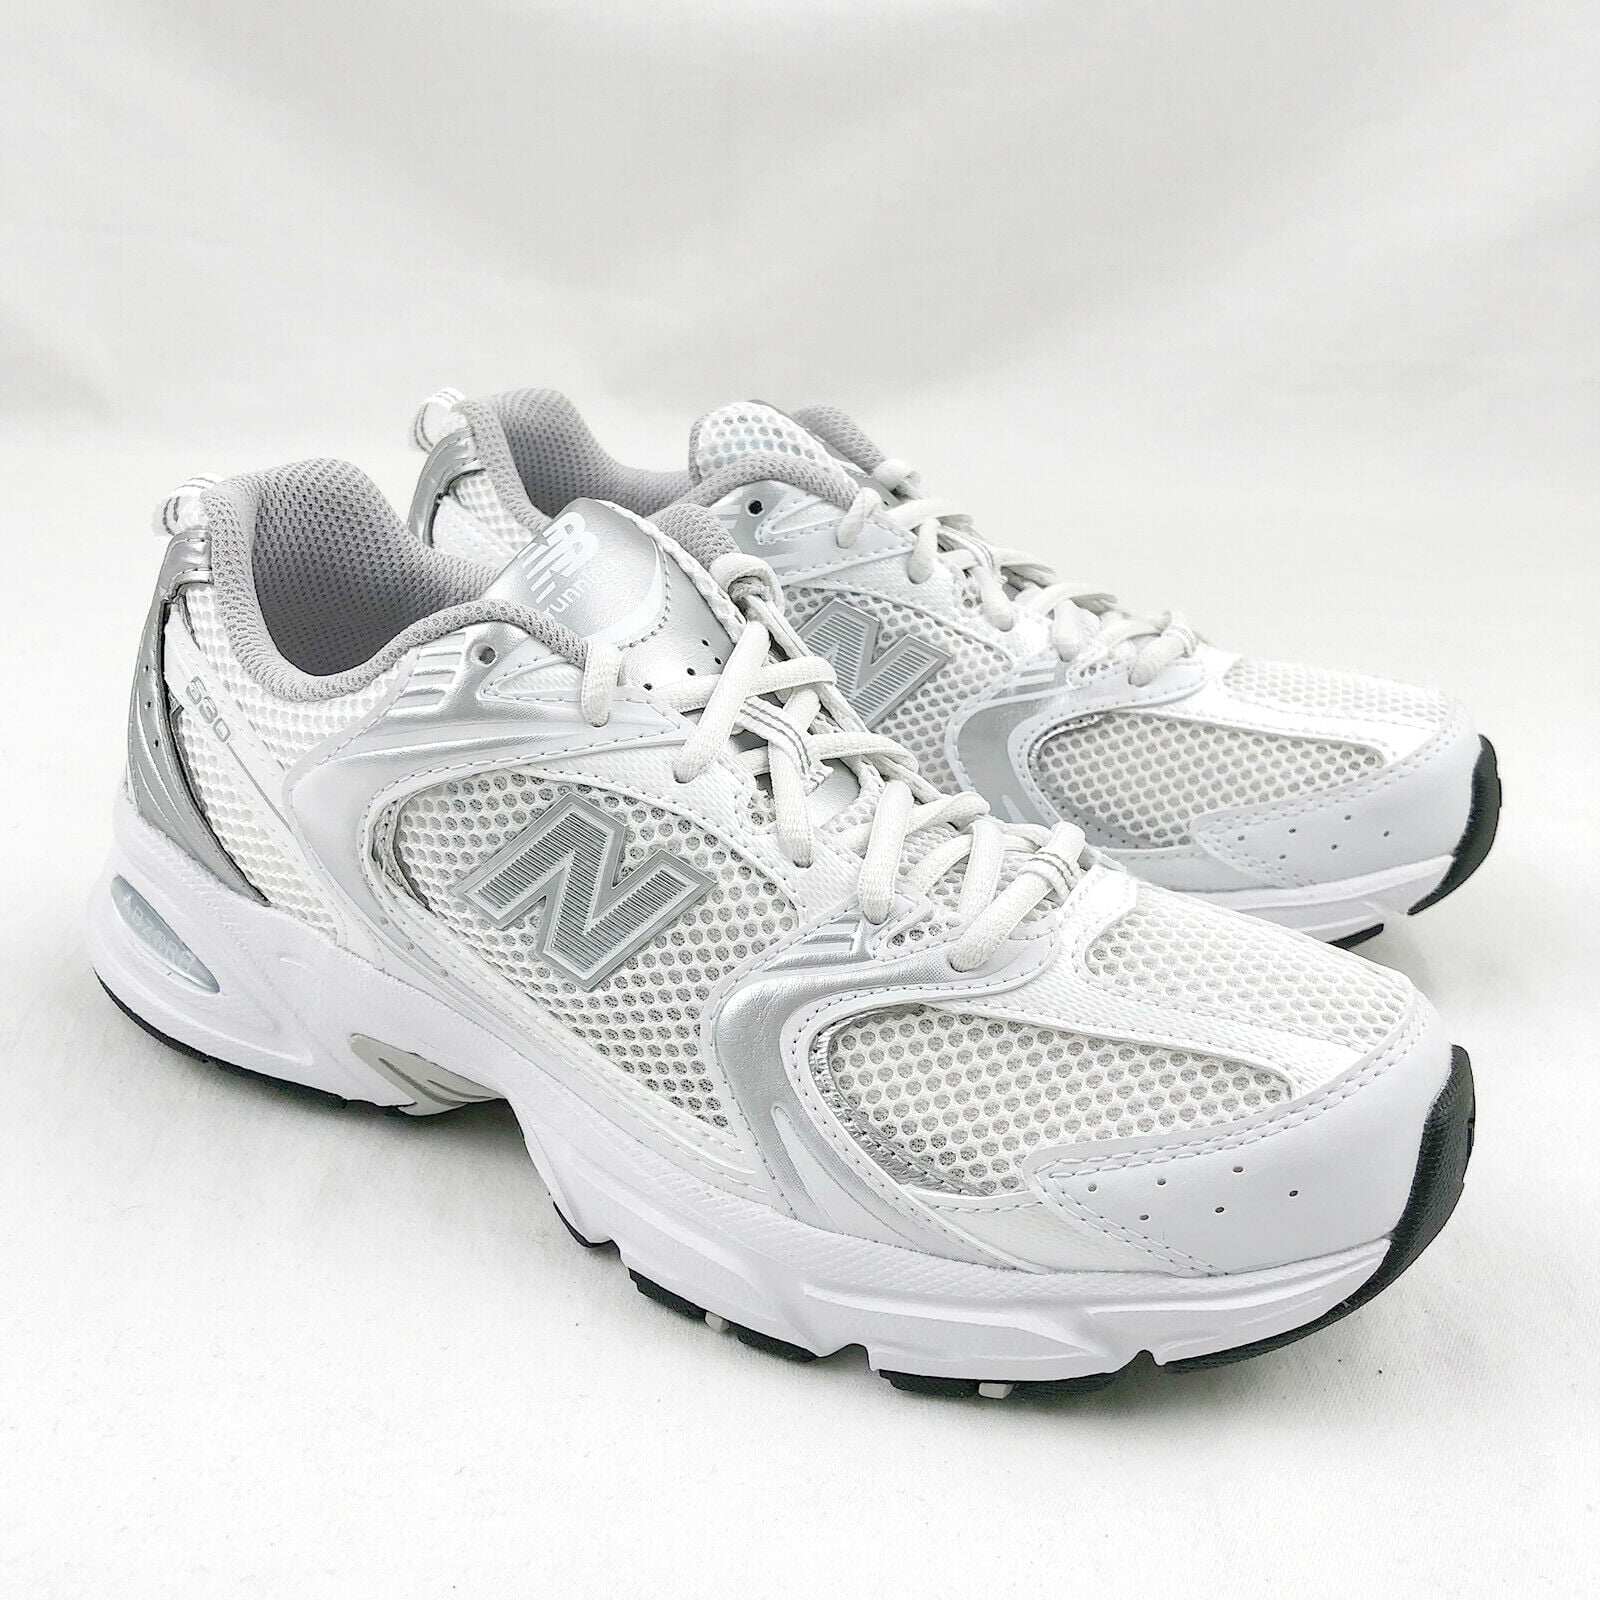 Dictar meditación Amigo por correspondencia New Balance 530 Retro White Silver Running Shoes Men's Sneakers MR530EMA -  Walmart.com